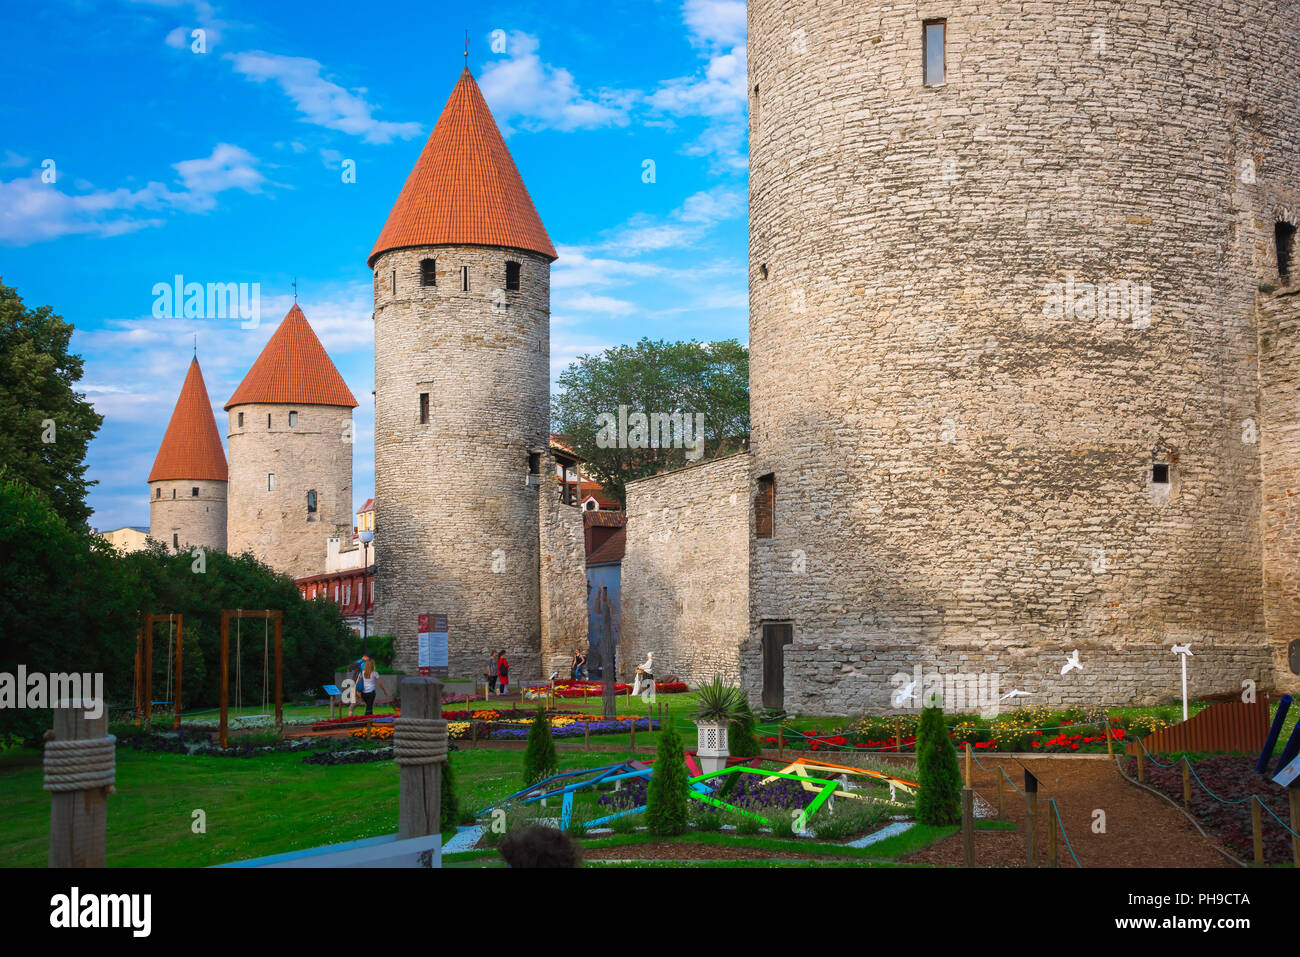 Tallinn Wall, Blick über die Stadt Park und Gärten in Richtung der unteren Stadt Mauer verbindet eine Reihe von mittelalterlichen Türmen im Zentrum von Tallinn, Estland. Stockfoto